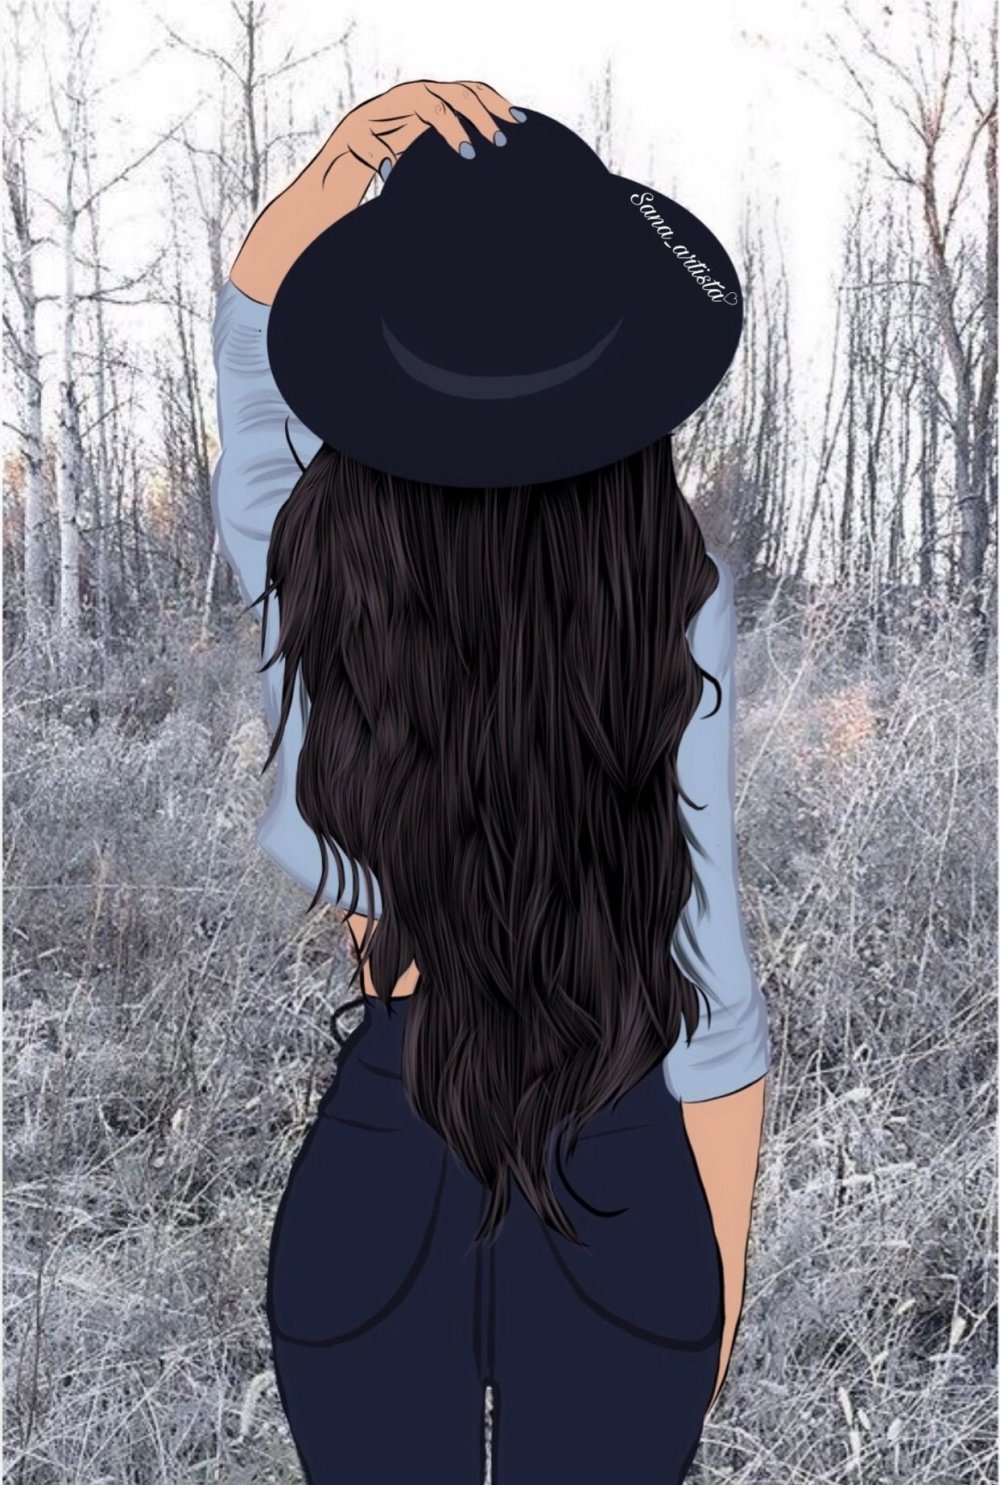 Картинка девушка со спины брюнетка нарисованная